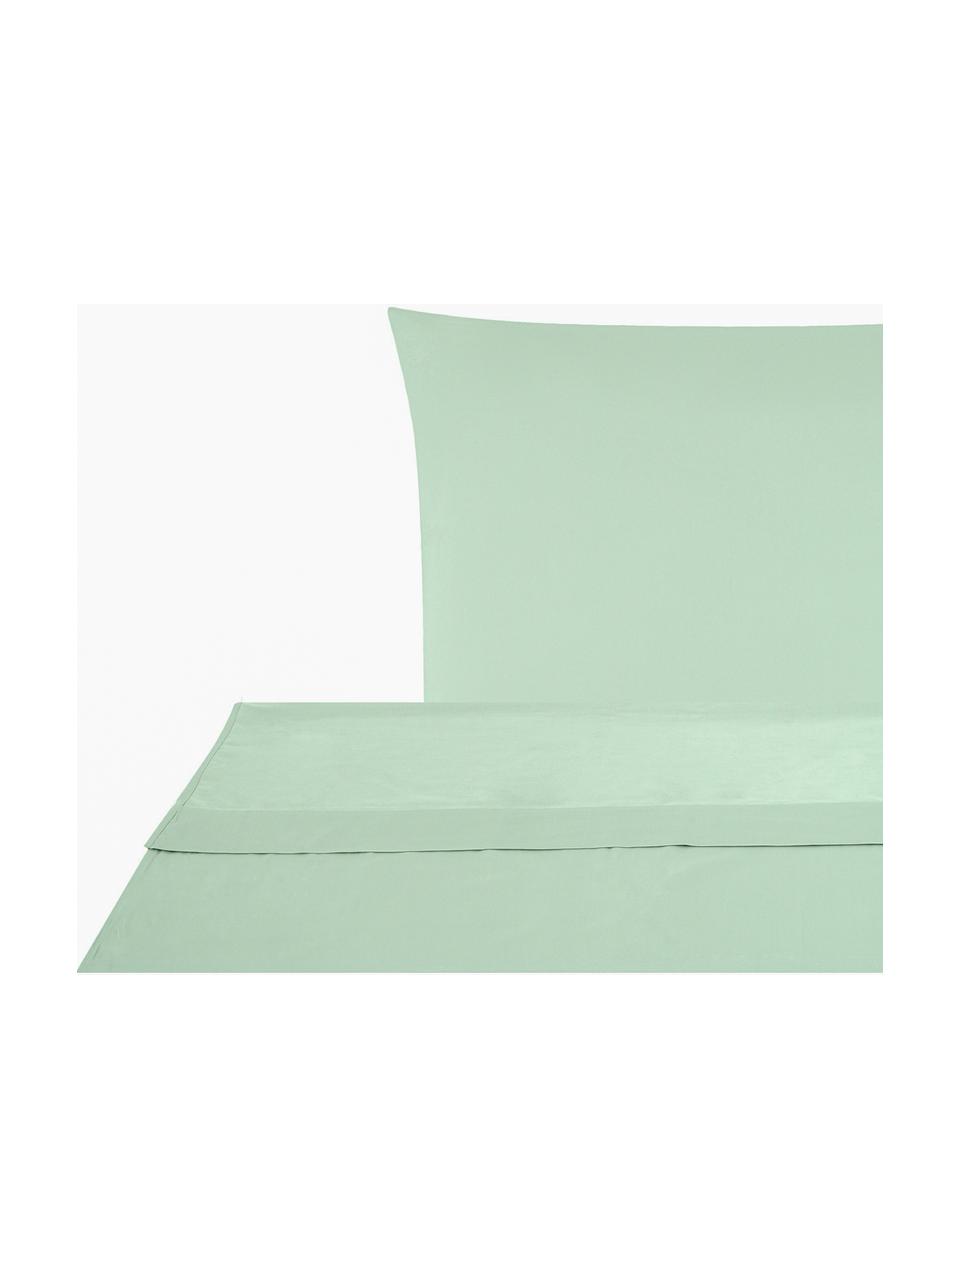 Set lenzuola in raso di cotone verde salvia Comfort, Tessuto: raso Densità del filo 250, Verde salvia, 240 x 300 cm + 2 federe 50 x 80 cm